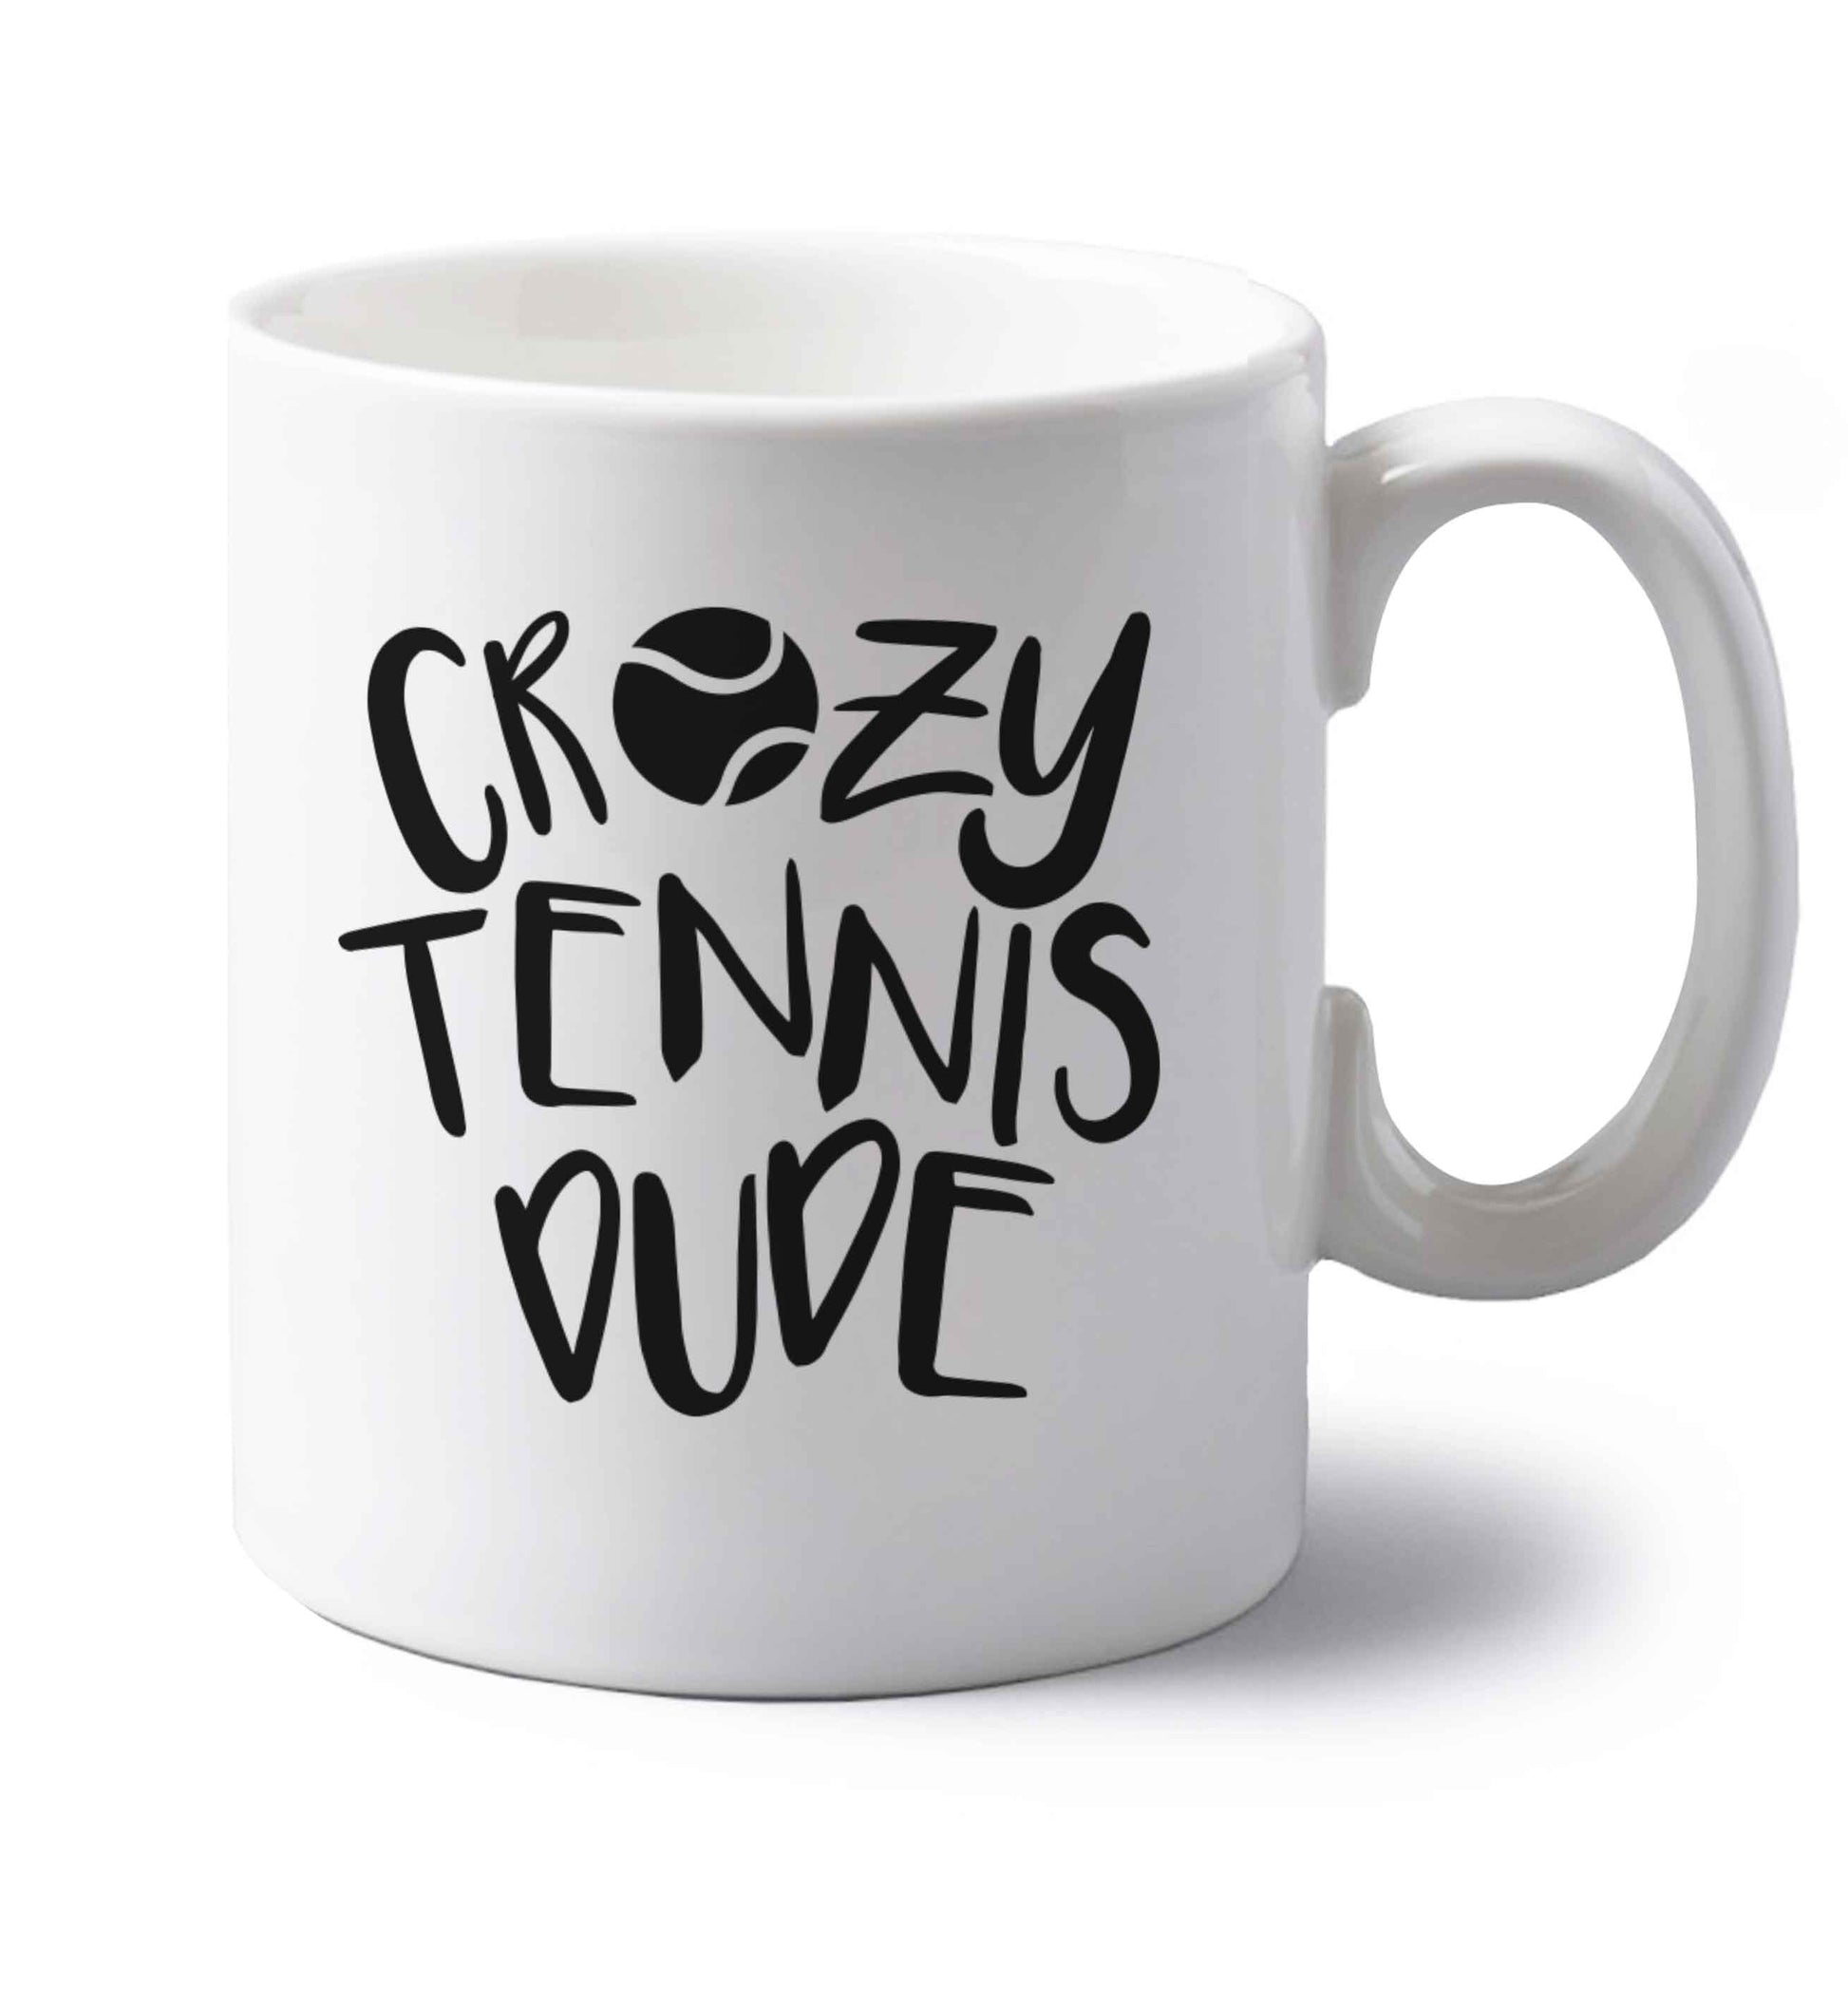 Crazy tennis dude left handed white ceramic mug 